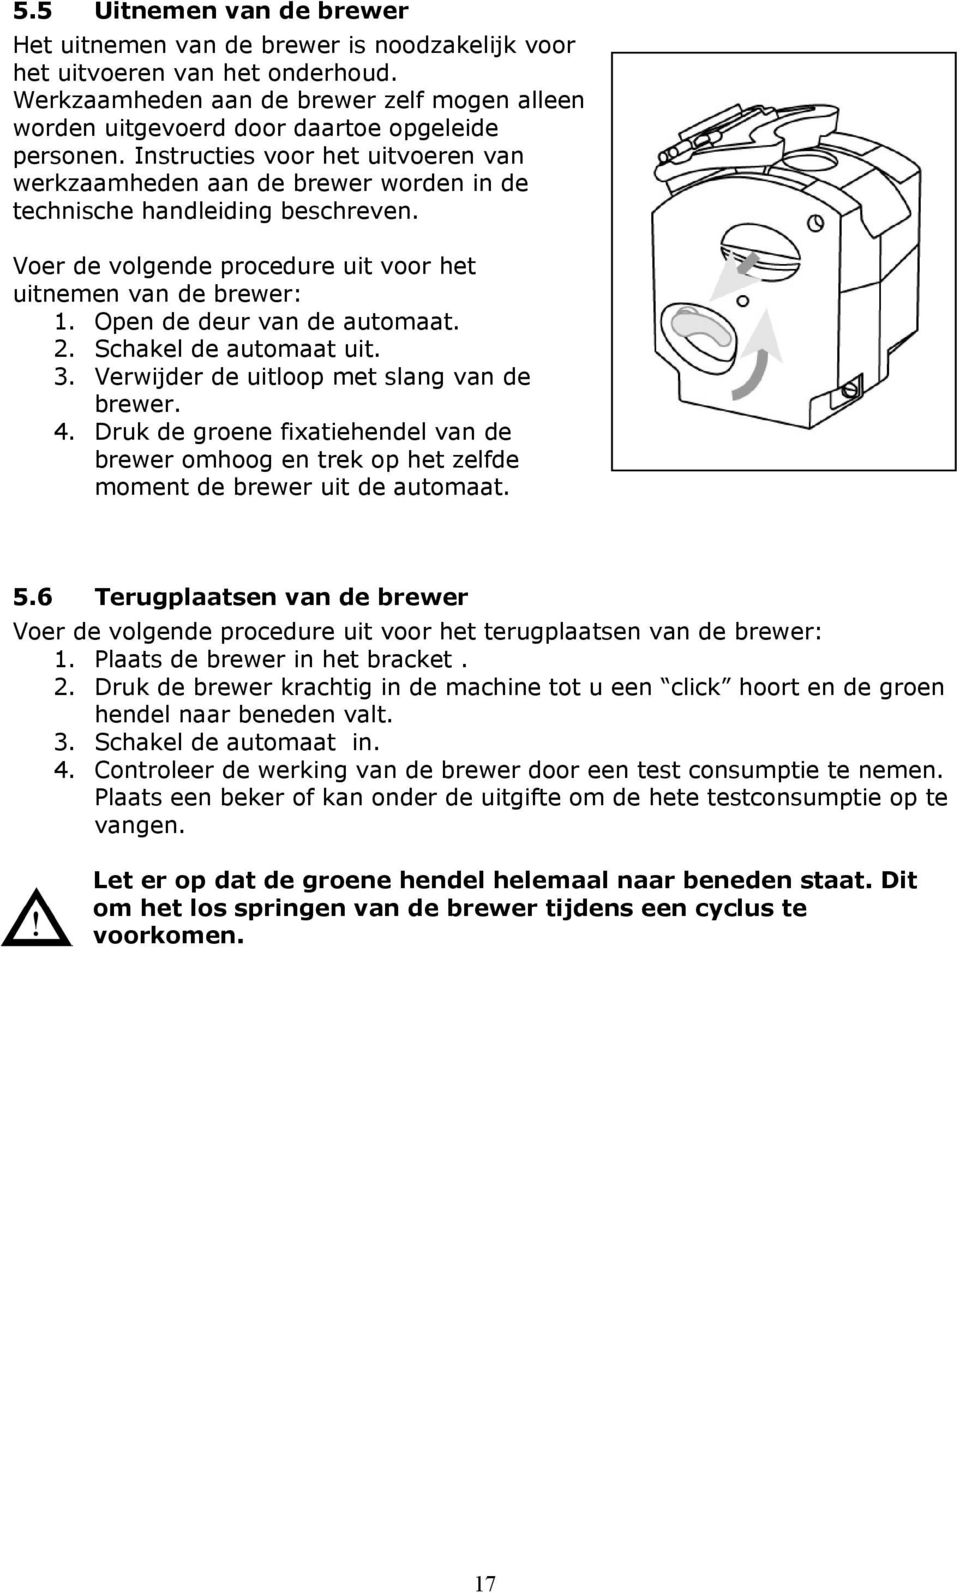 Instructies voor het uitvoeren van werkzaamheden aan de brewer worden in de technische handleiding beschreven. Voer de volgende procedure uit voor het uitnemen van de brewer: 2.